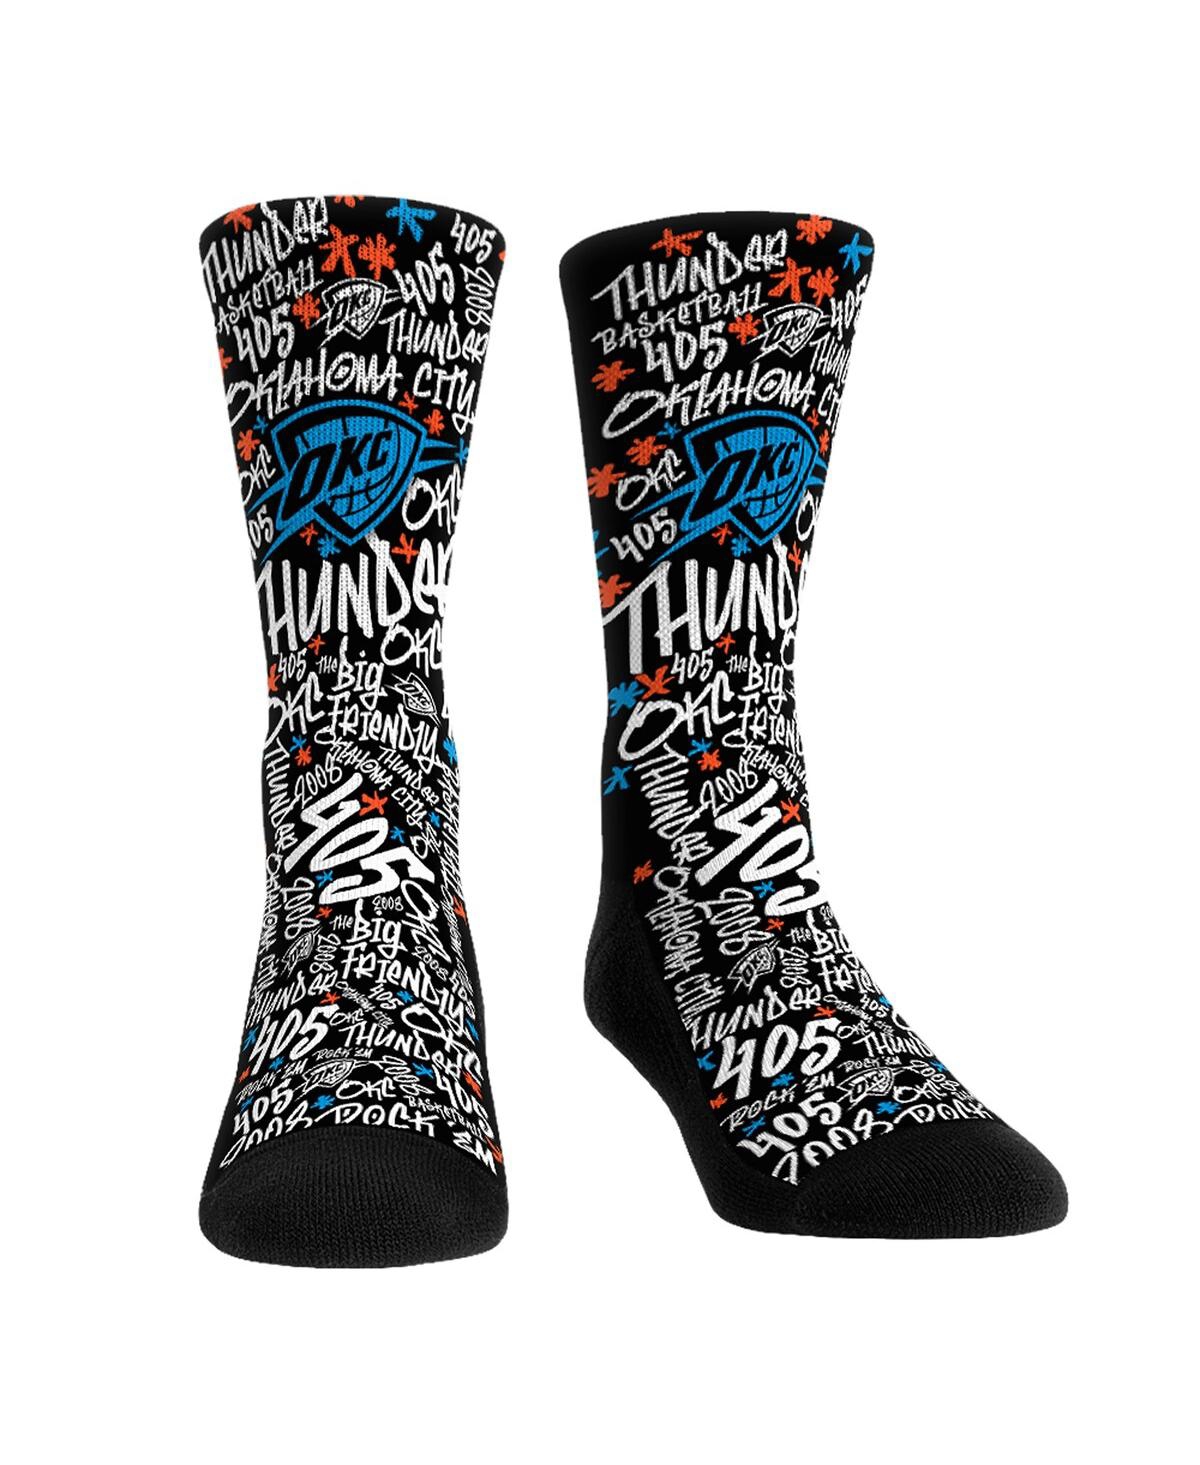 Rock 'em Men's And Women's  Socks Oklahoma City Thunder Graffiti Crew Socks In Black